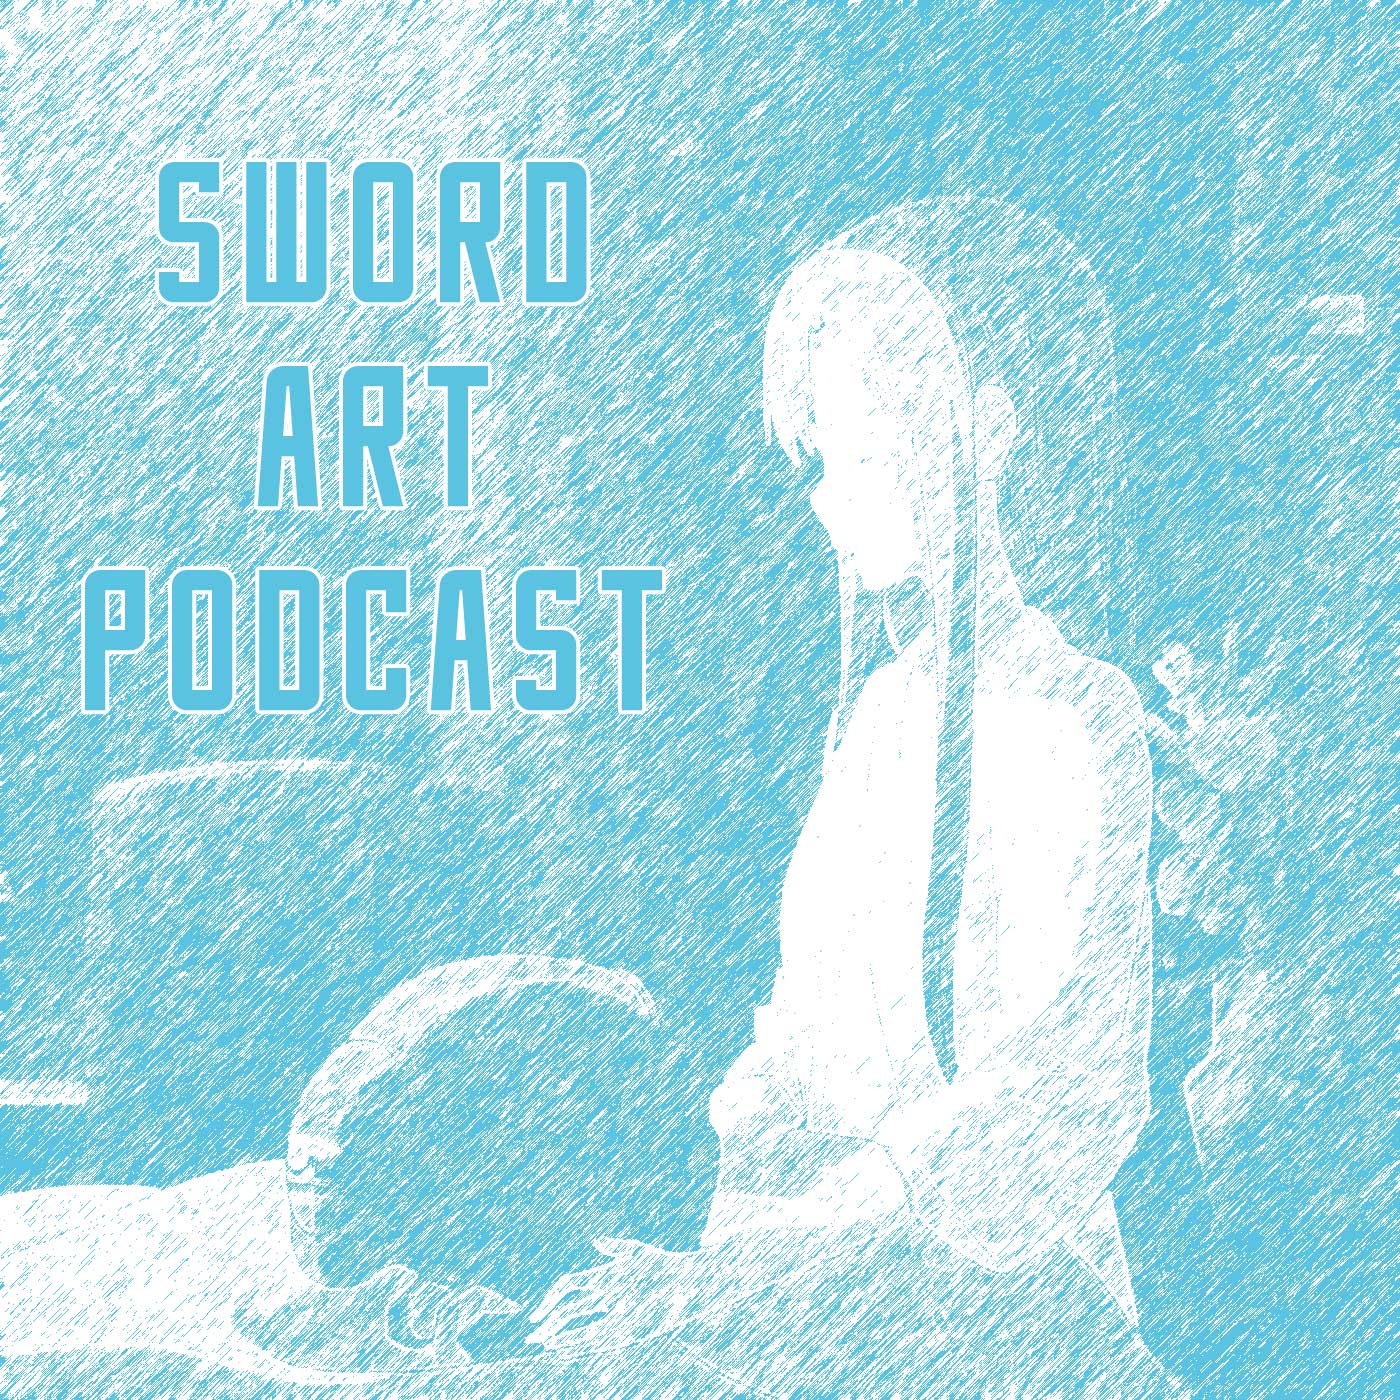 Sword Art Podcast - Season 4 - Epsiode 3